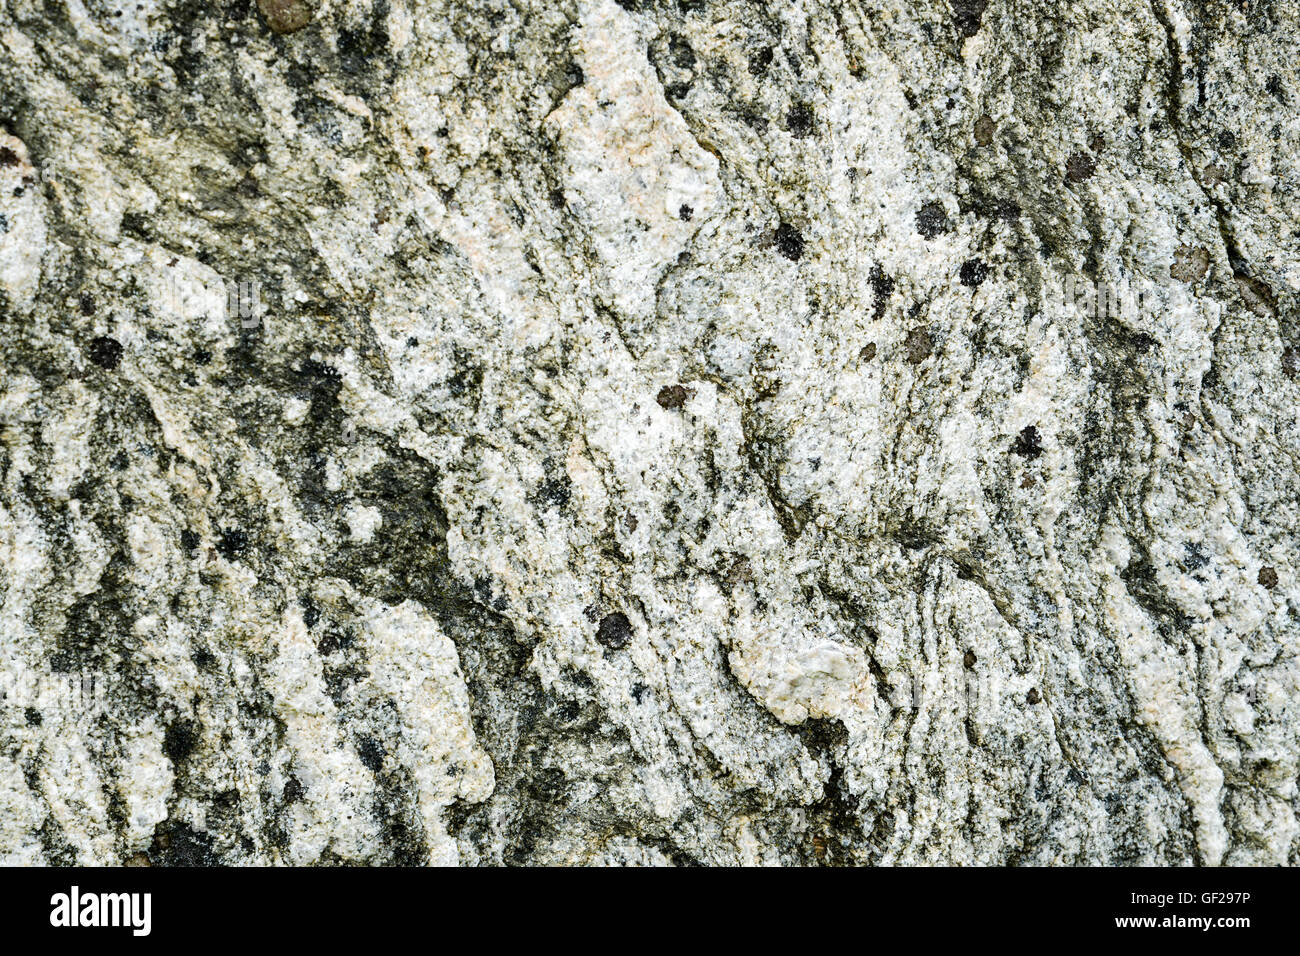 Callanish - dettaglio di una delle pietre - Lewisian gneiss Foto Stock